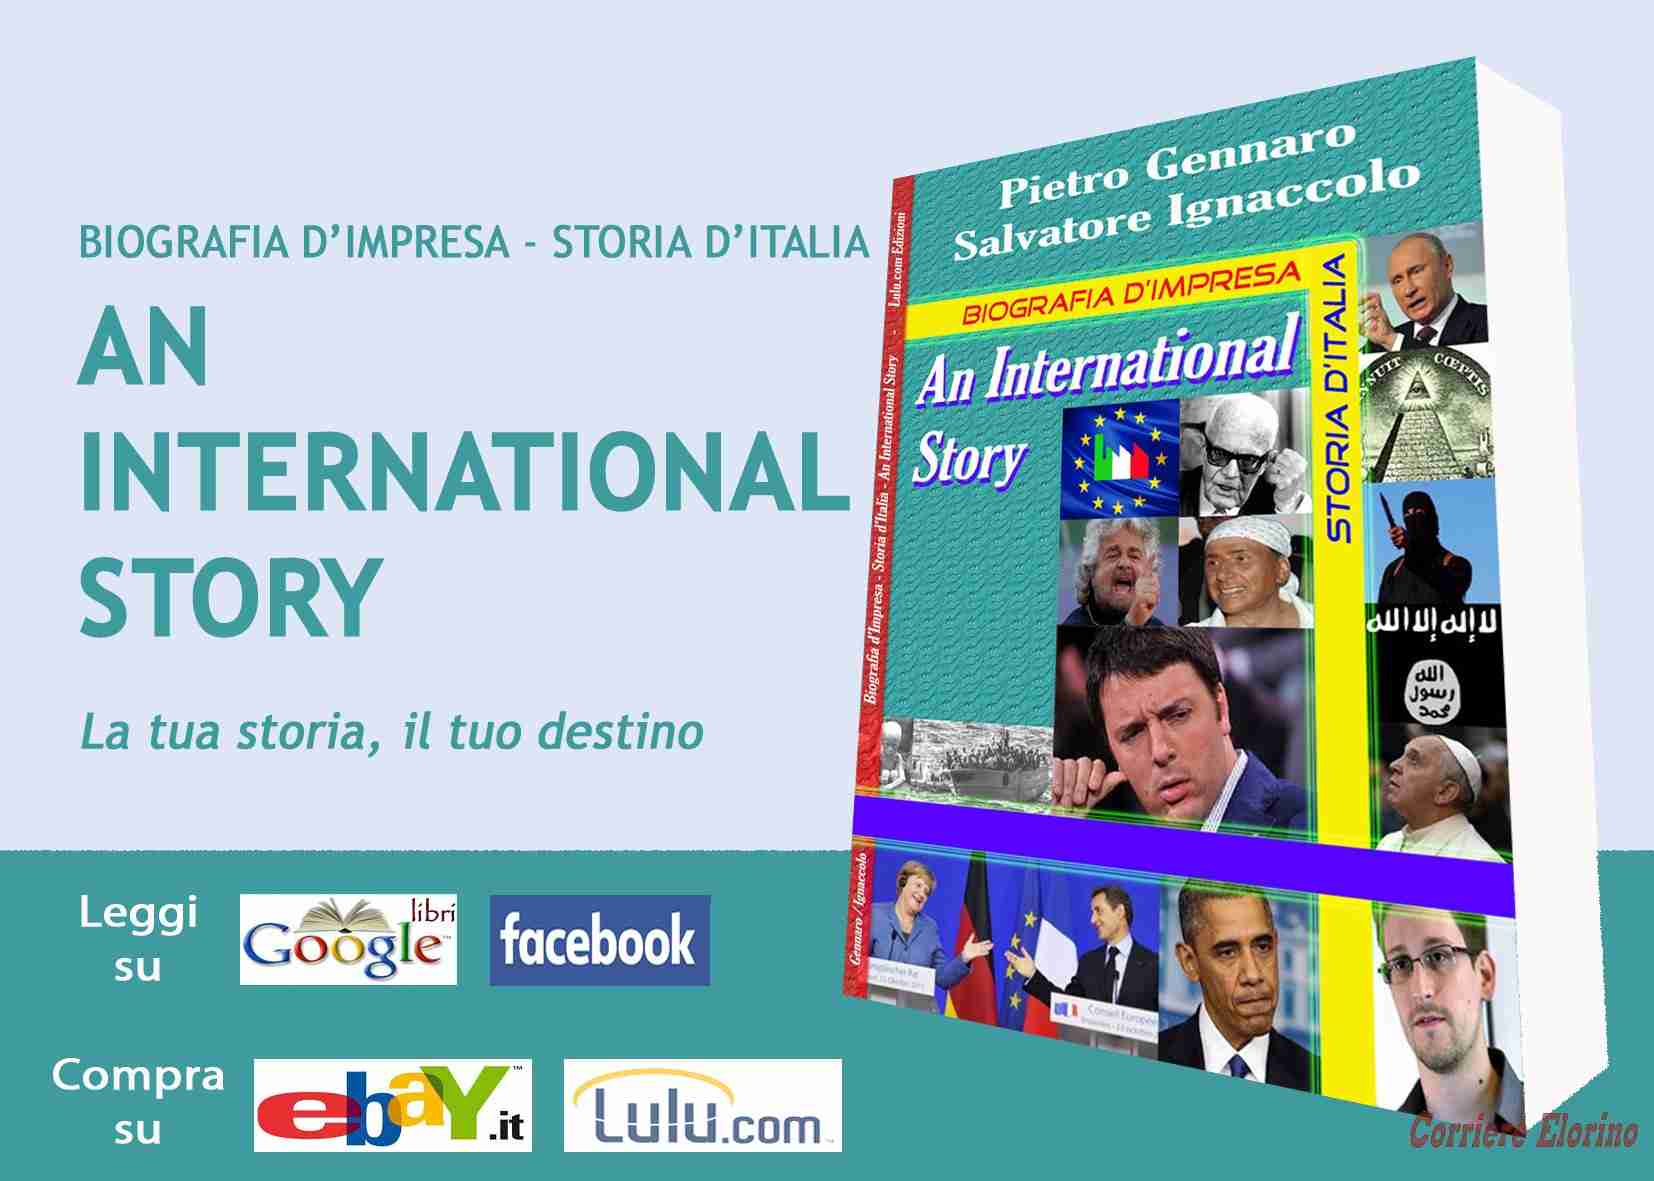 Verrà presentato il 12 novembre il libro “An International Story”, di Salvatore Ignaccolo e Pietro Gennaro